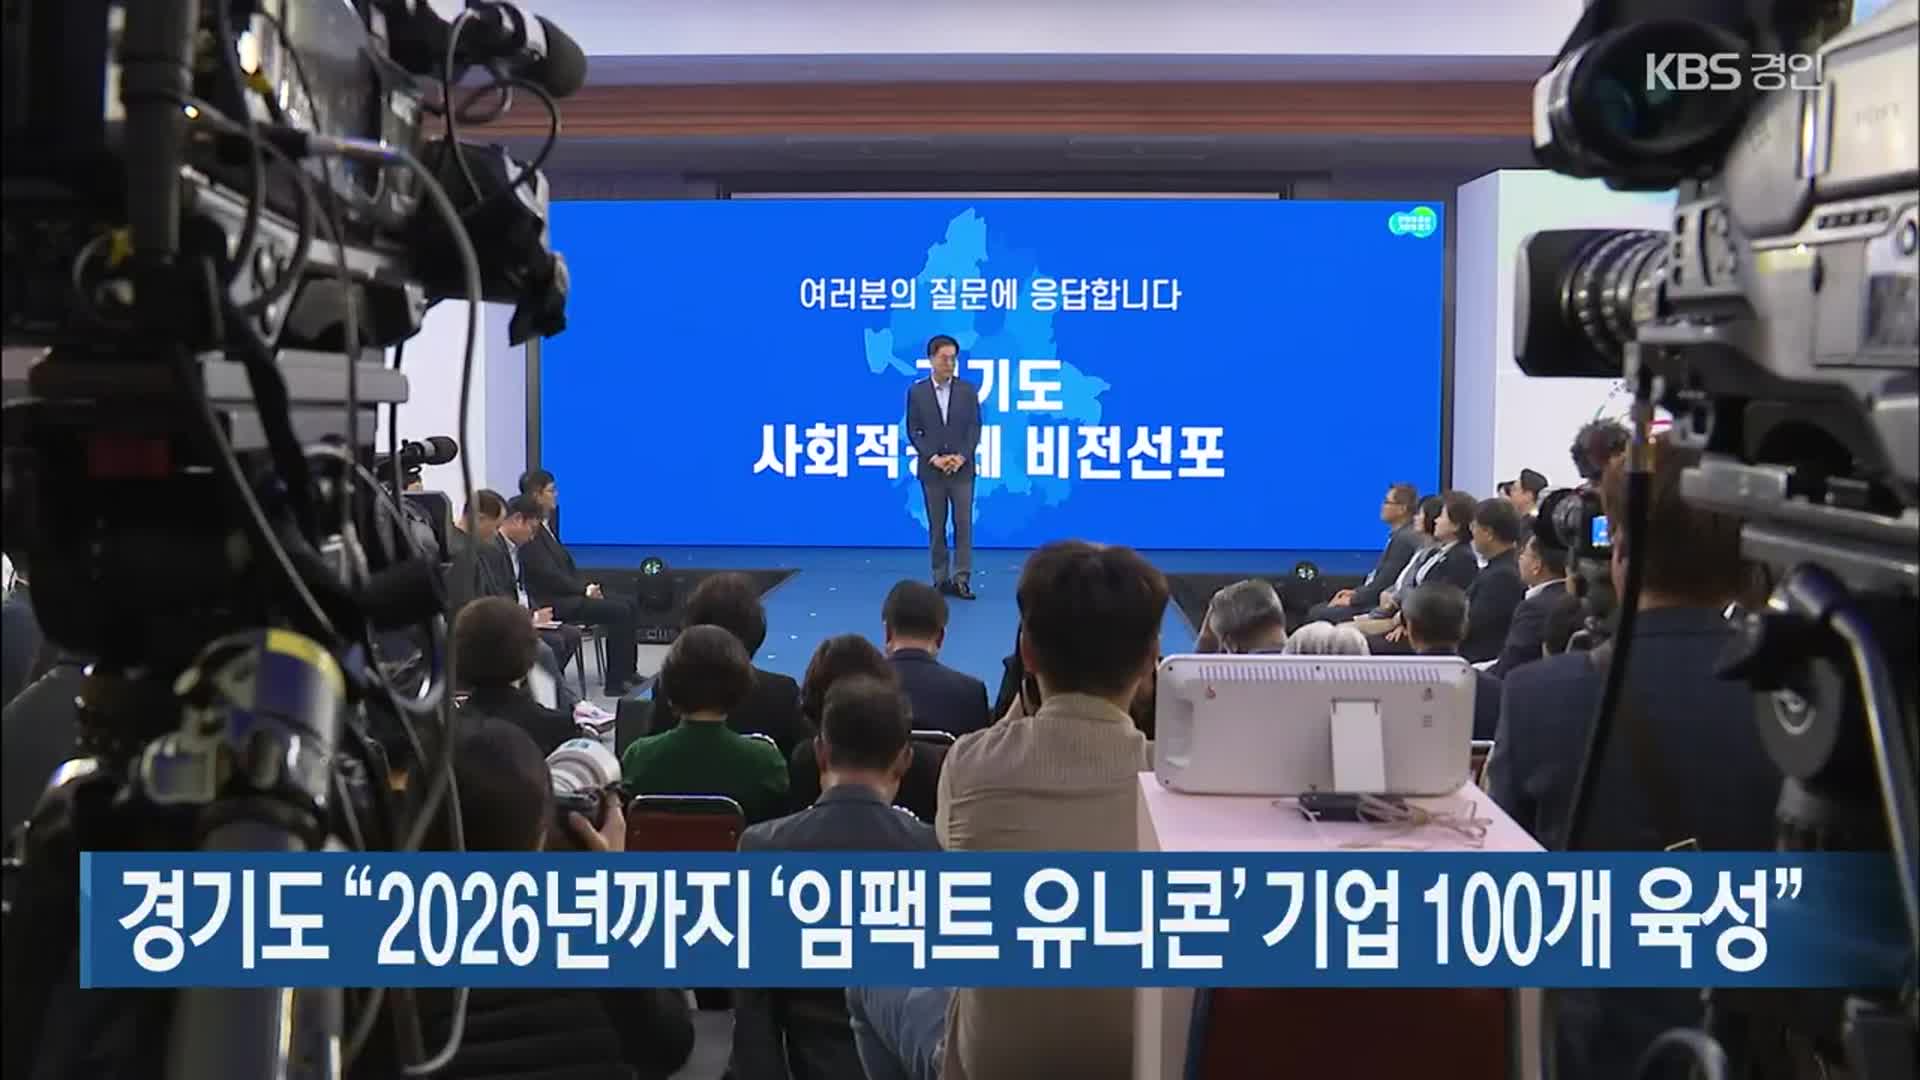 경기도 “2026년까지 ‘임팩트 유니콘’ 기업 100개 육성”